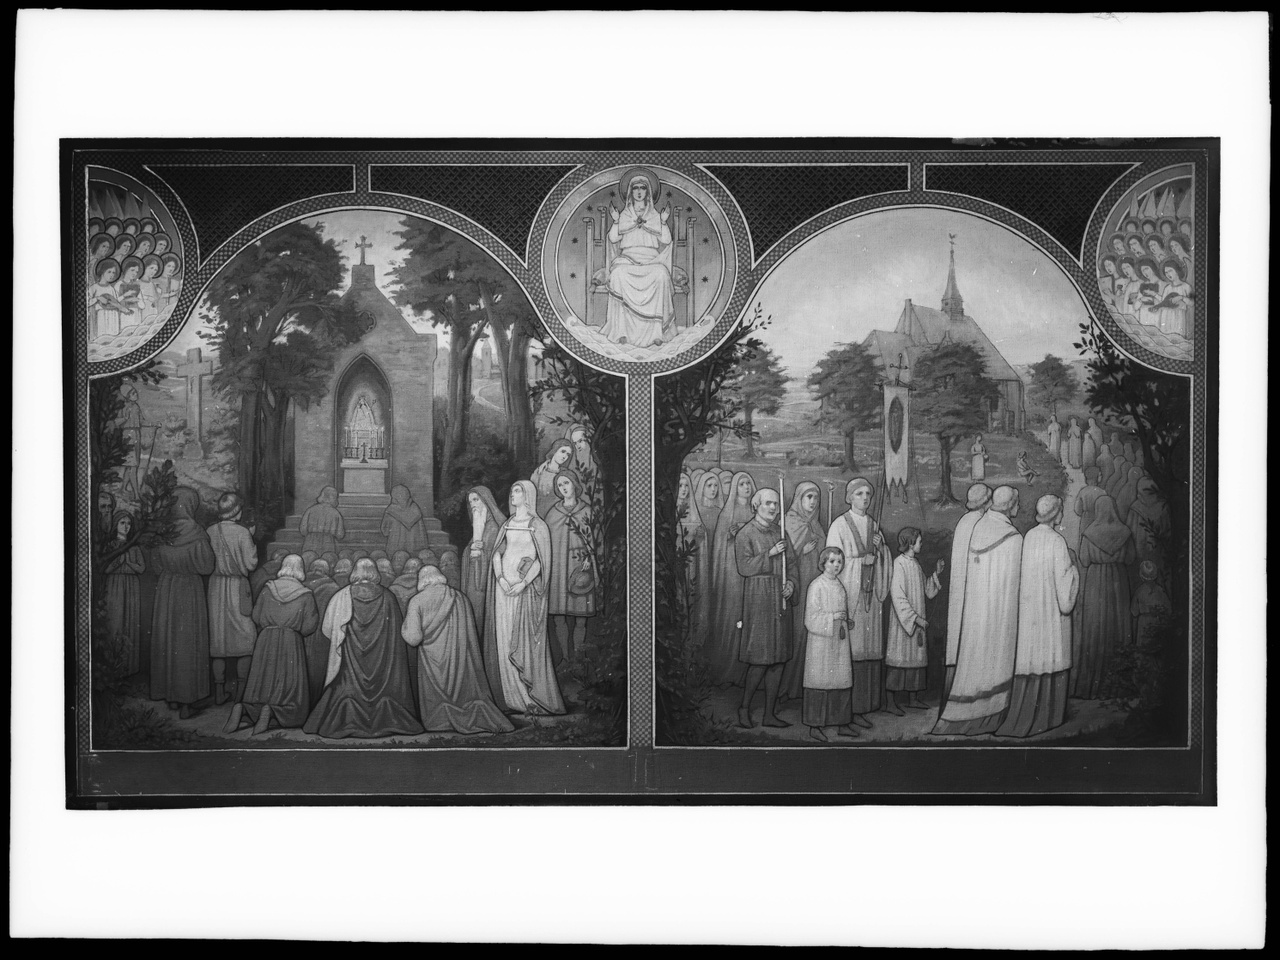 Glasnegatief van foto van producten uit de Cuypers' Kunstwerkplaatsen: "Foto van een tweeluik met daarop voorstellingen van gelovigen bij een kapelletje en een processie op weg naar een kerk".